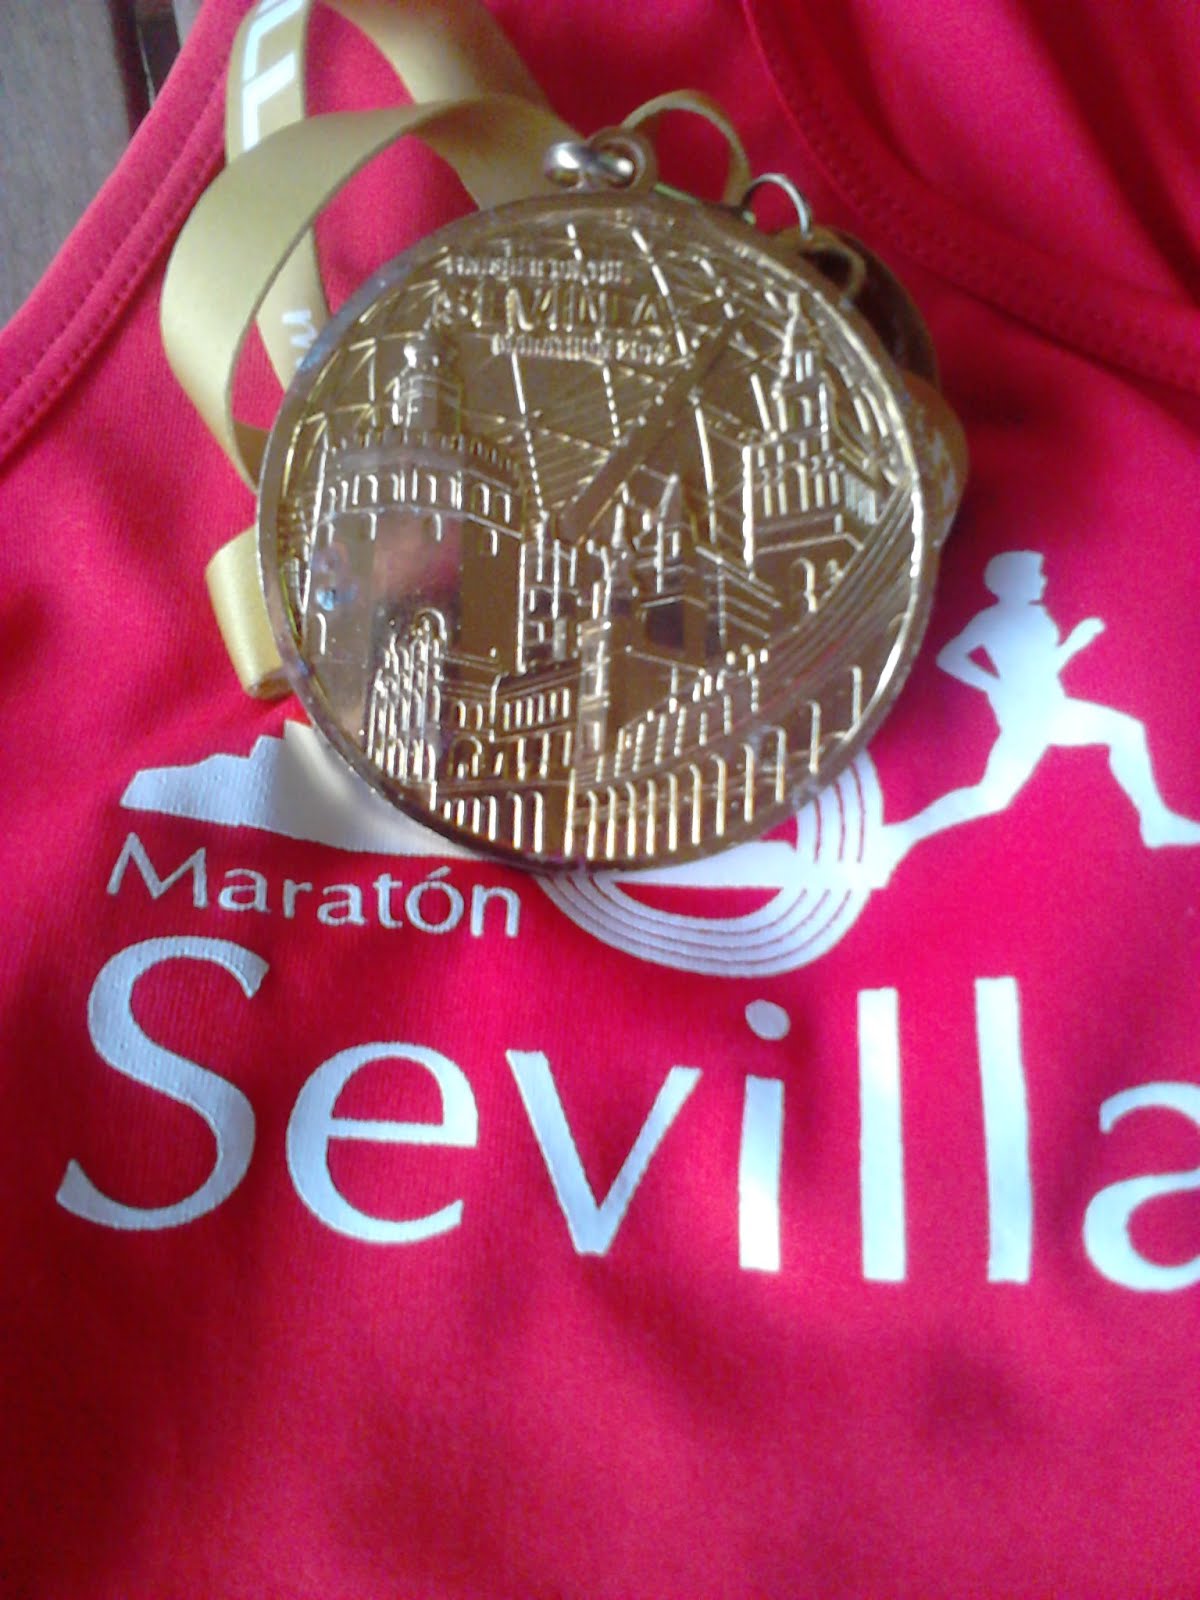 Sevilla 2014